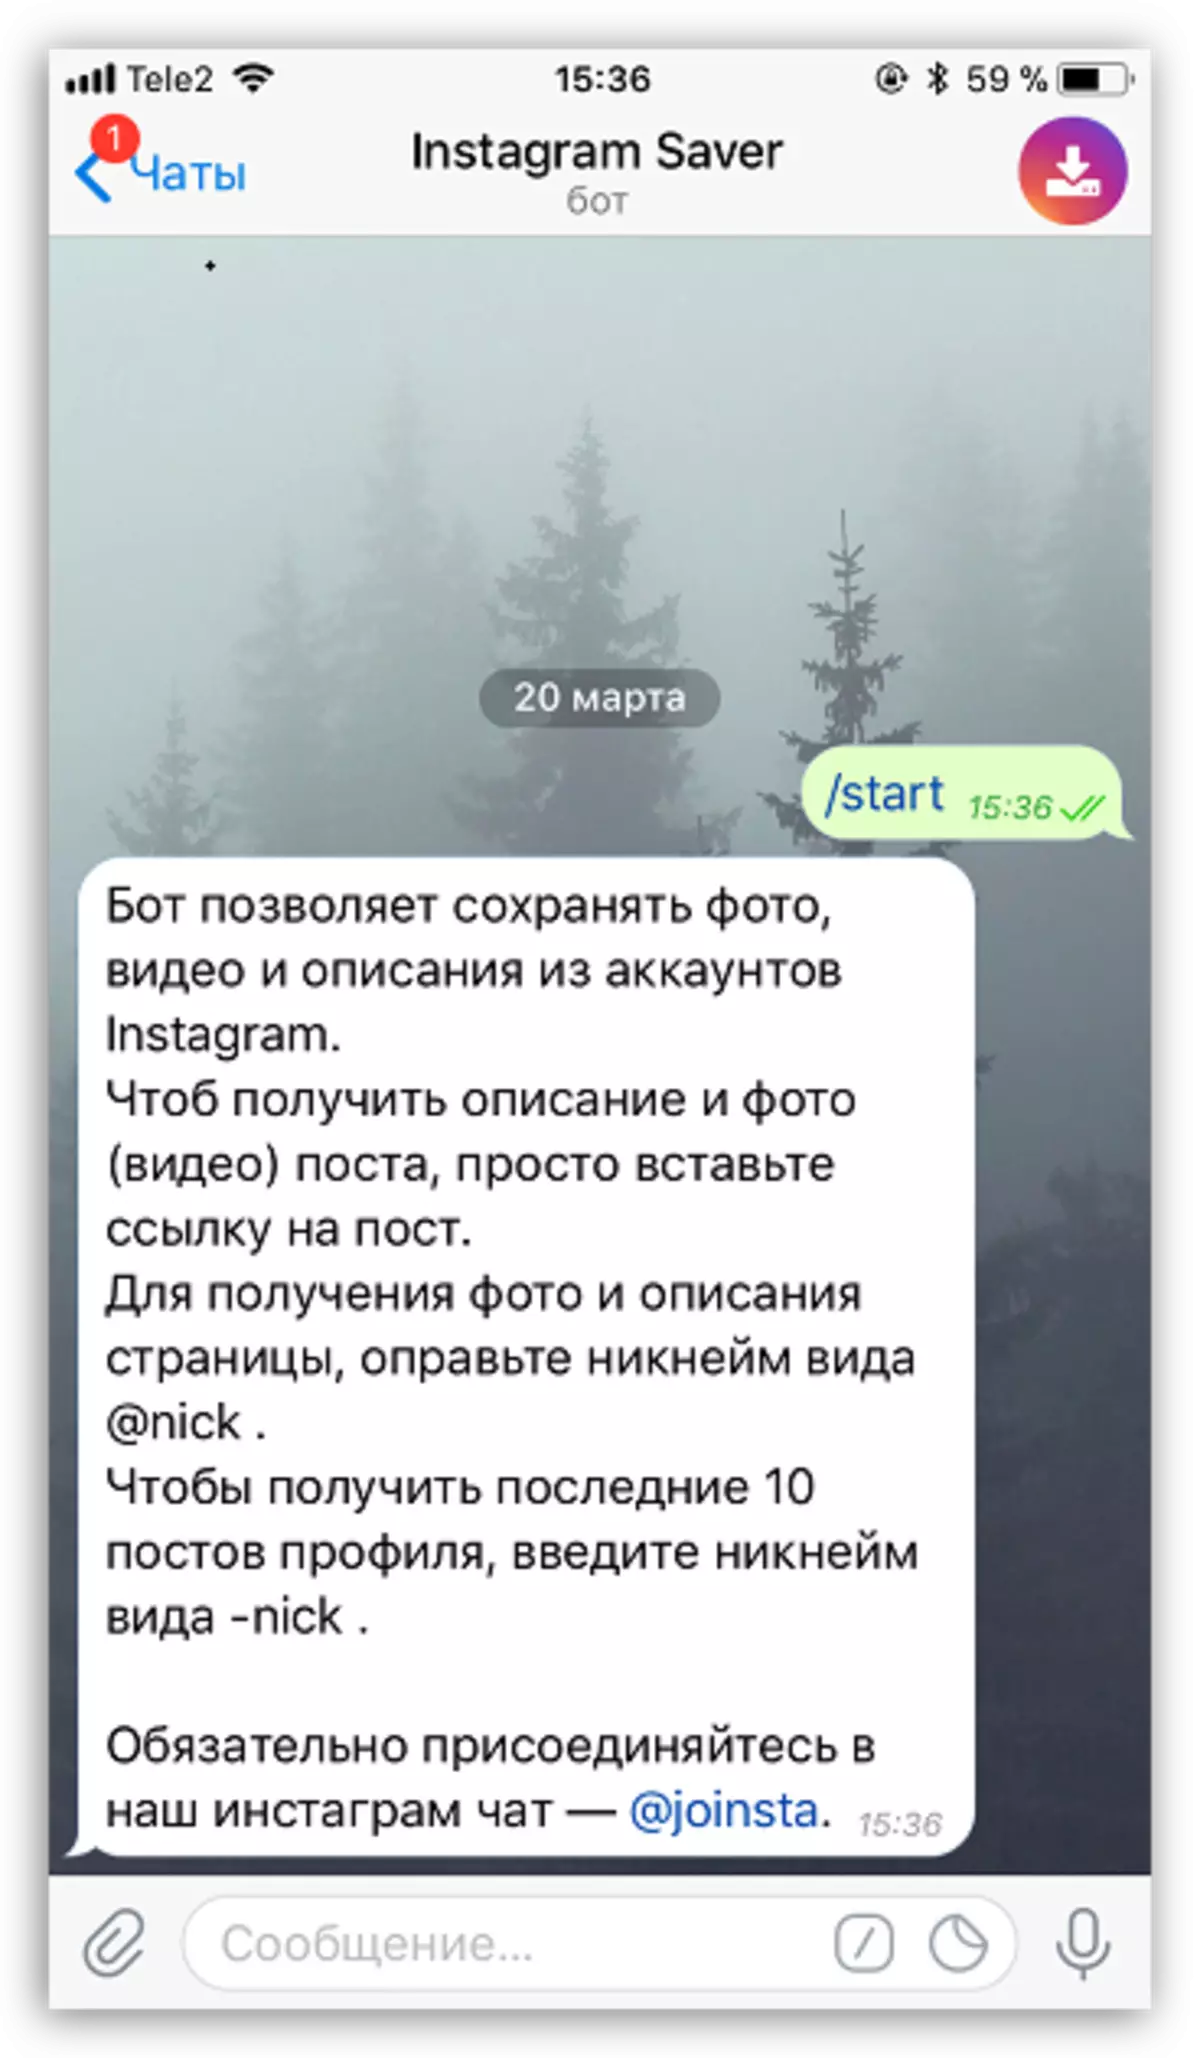 Instruksies vir die gebruik van Bot Instagram Saver in telegram